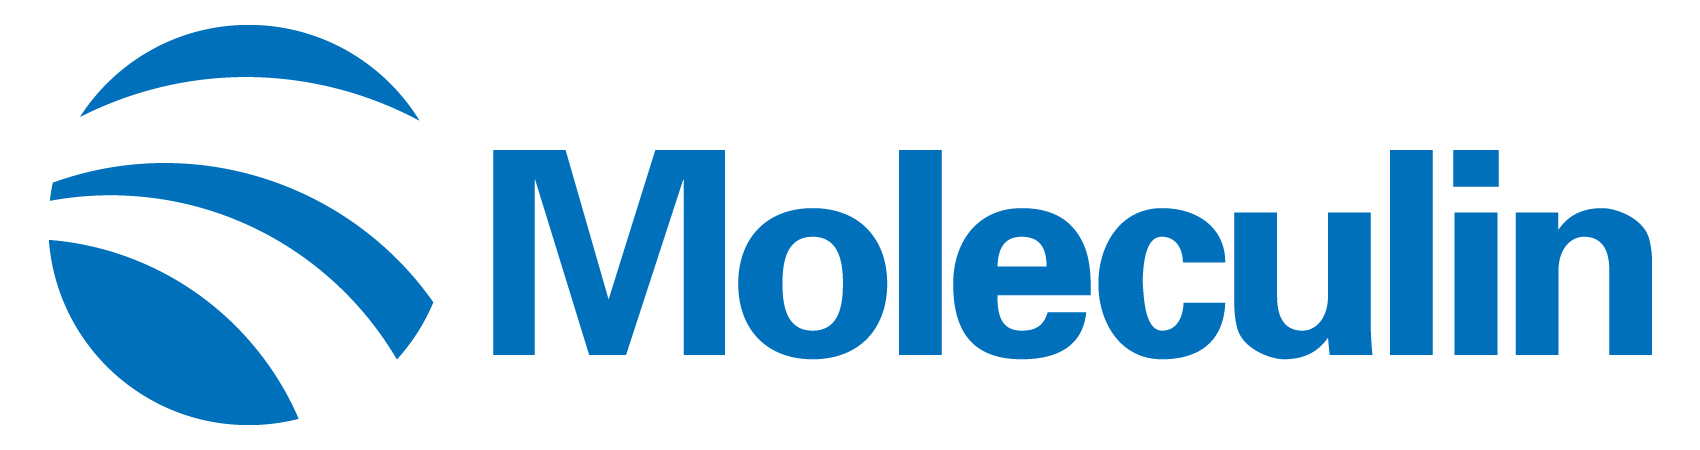 moleculin-logo_horiza44.jpg